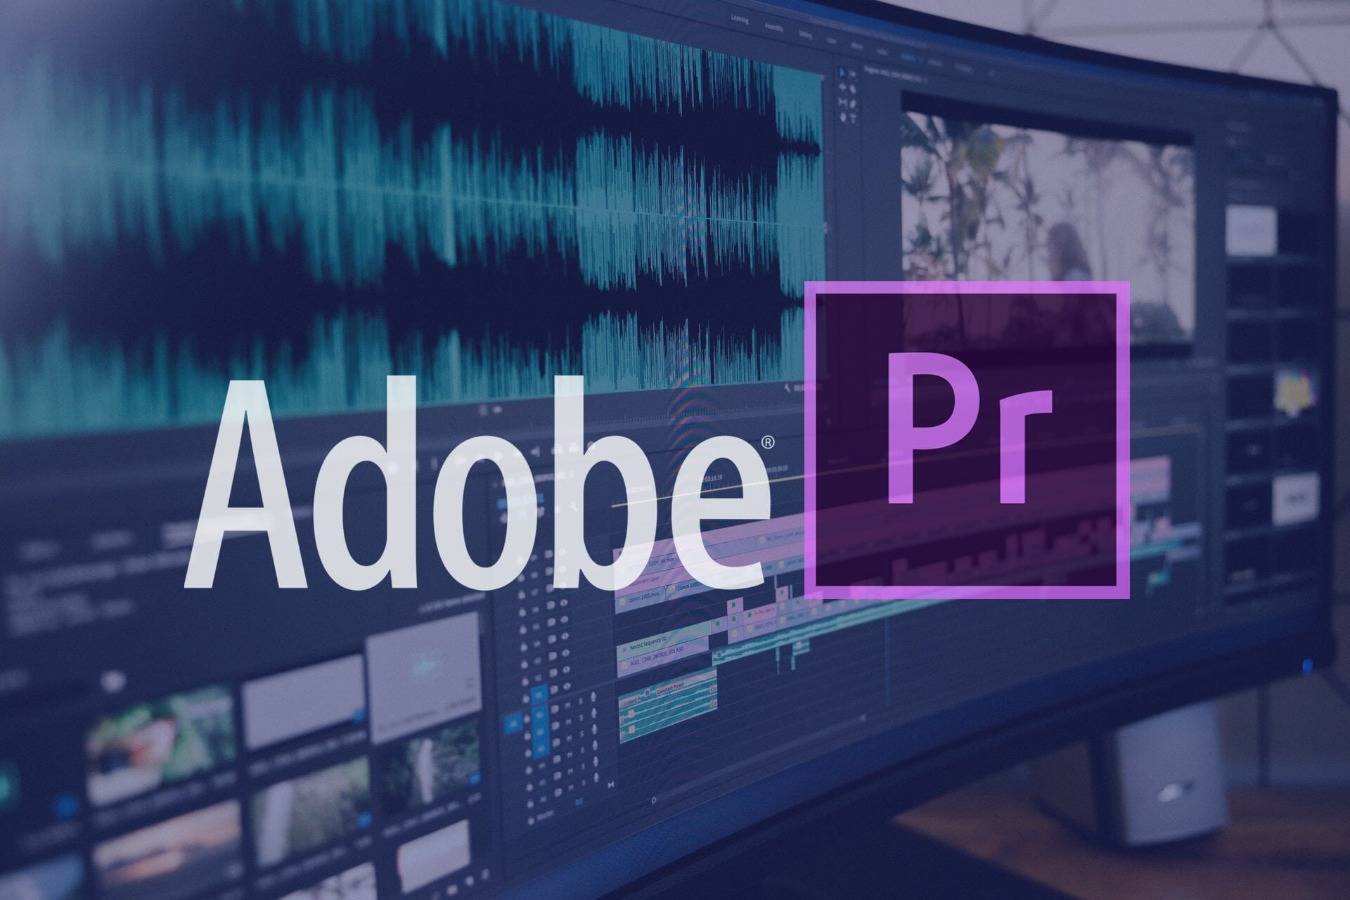 Adobe premiere pro full version